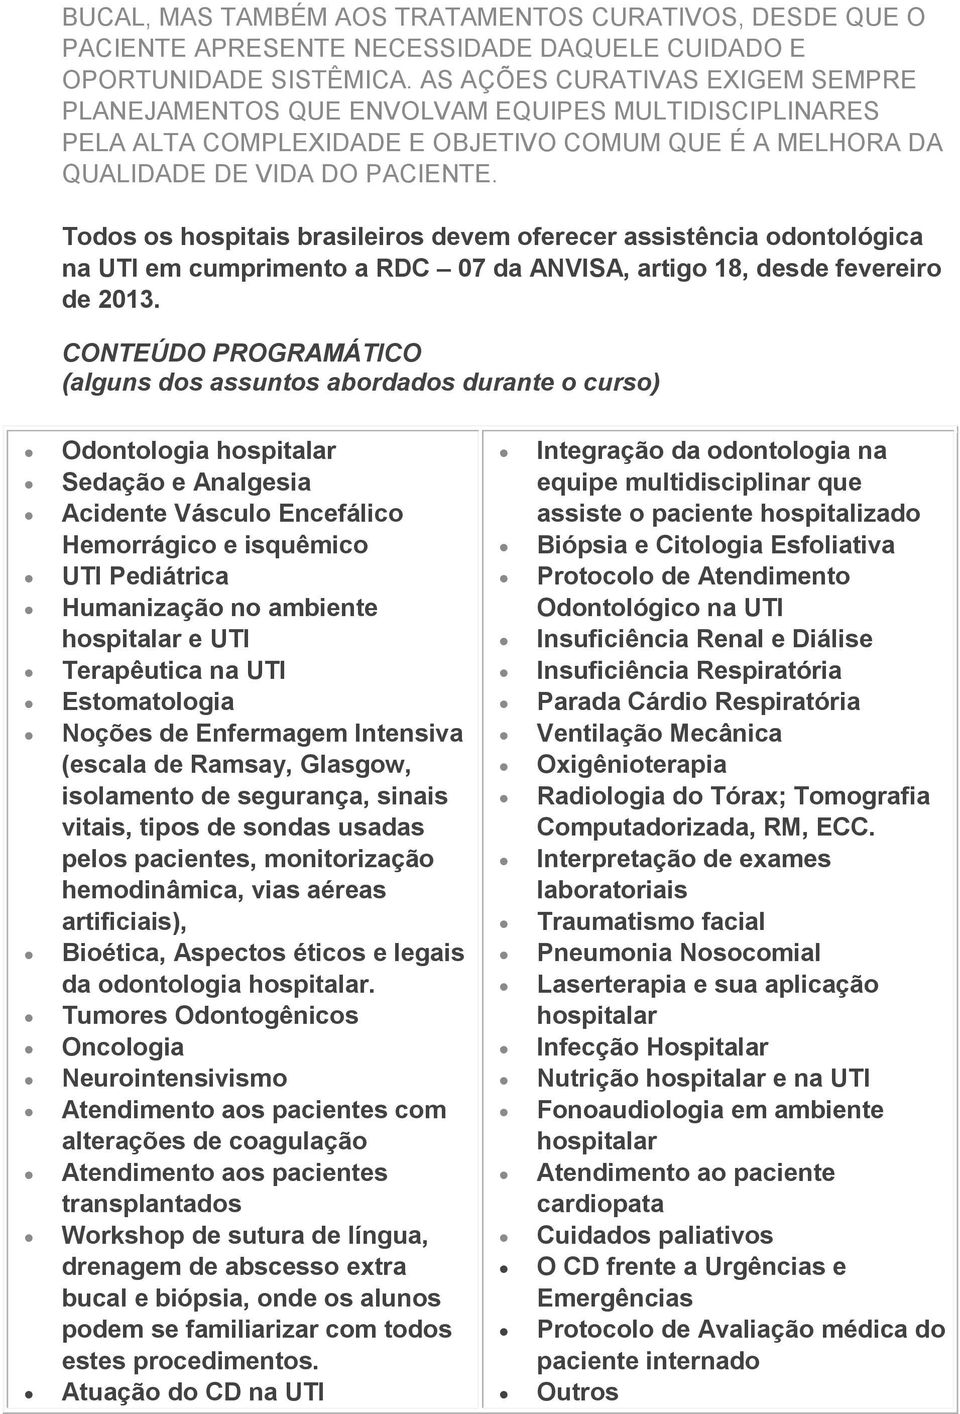 Todos os hospitais brasileiros devem oferecer assistência odontológica na UTI em cumprimento a RDC 07 da ANVISA, artigo 18, desde fevereiro de 2013.